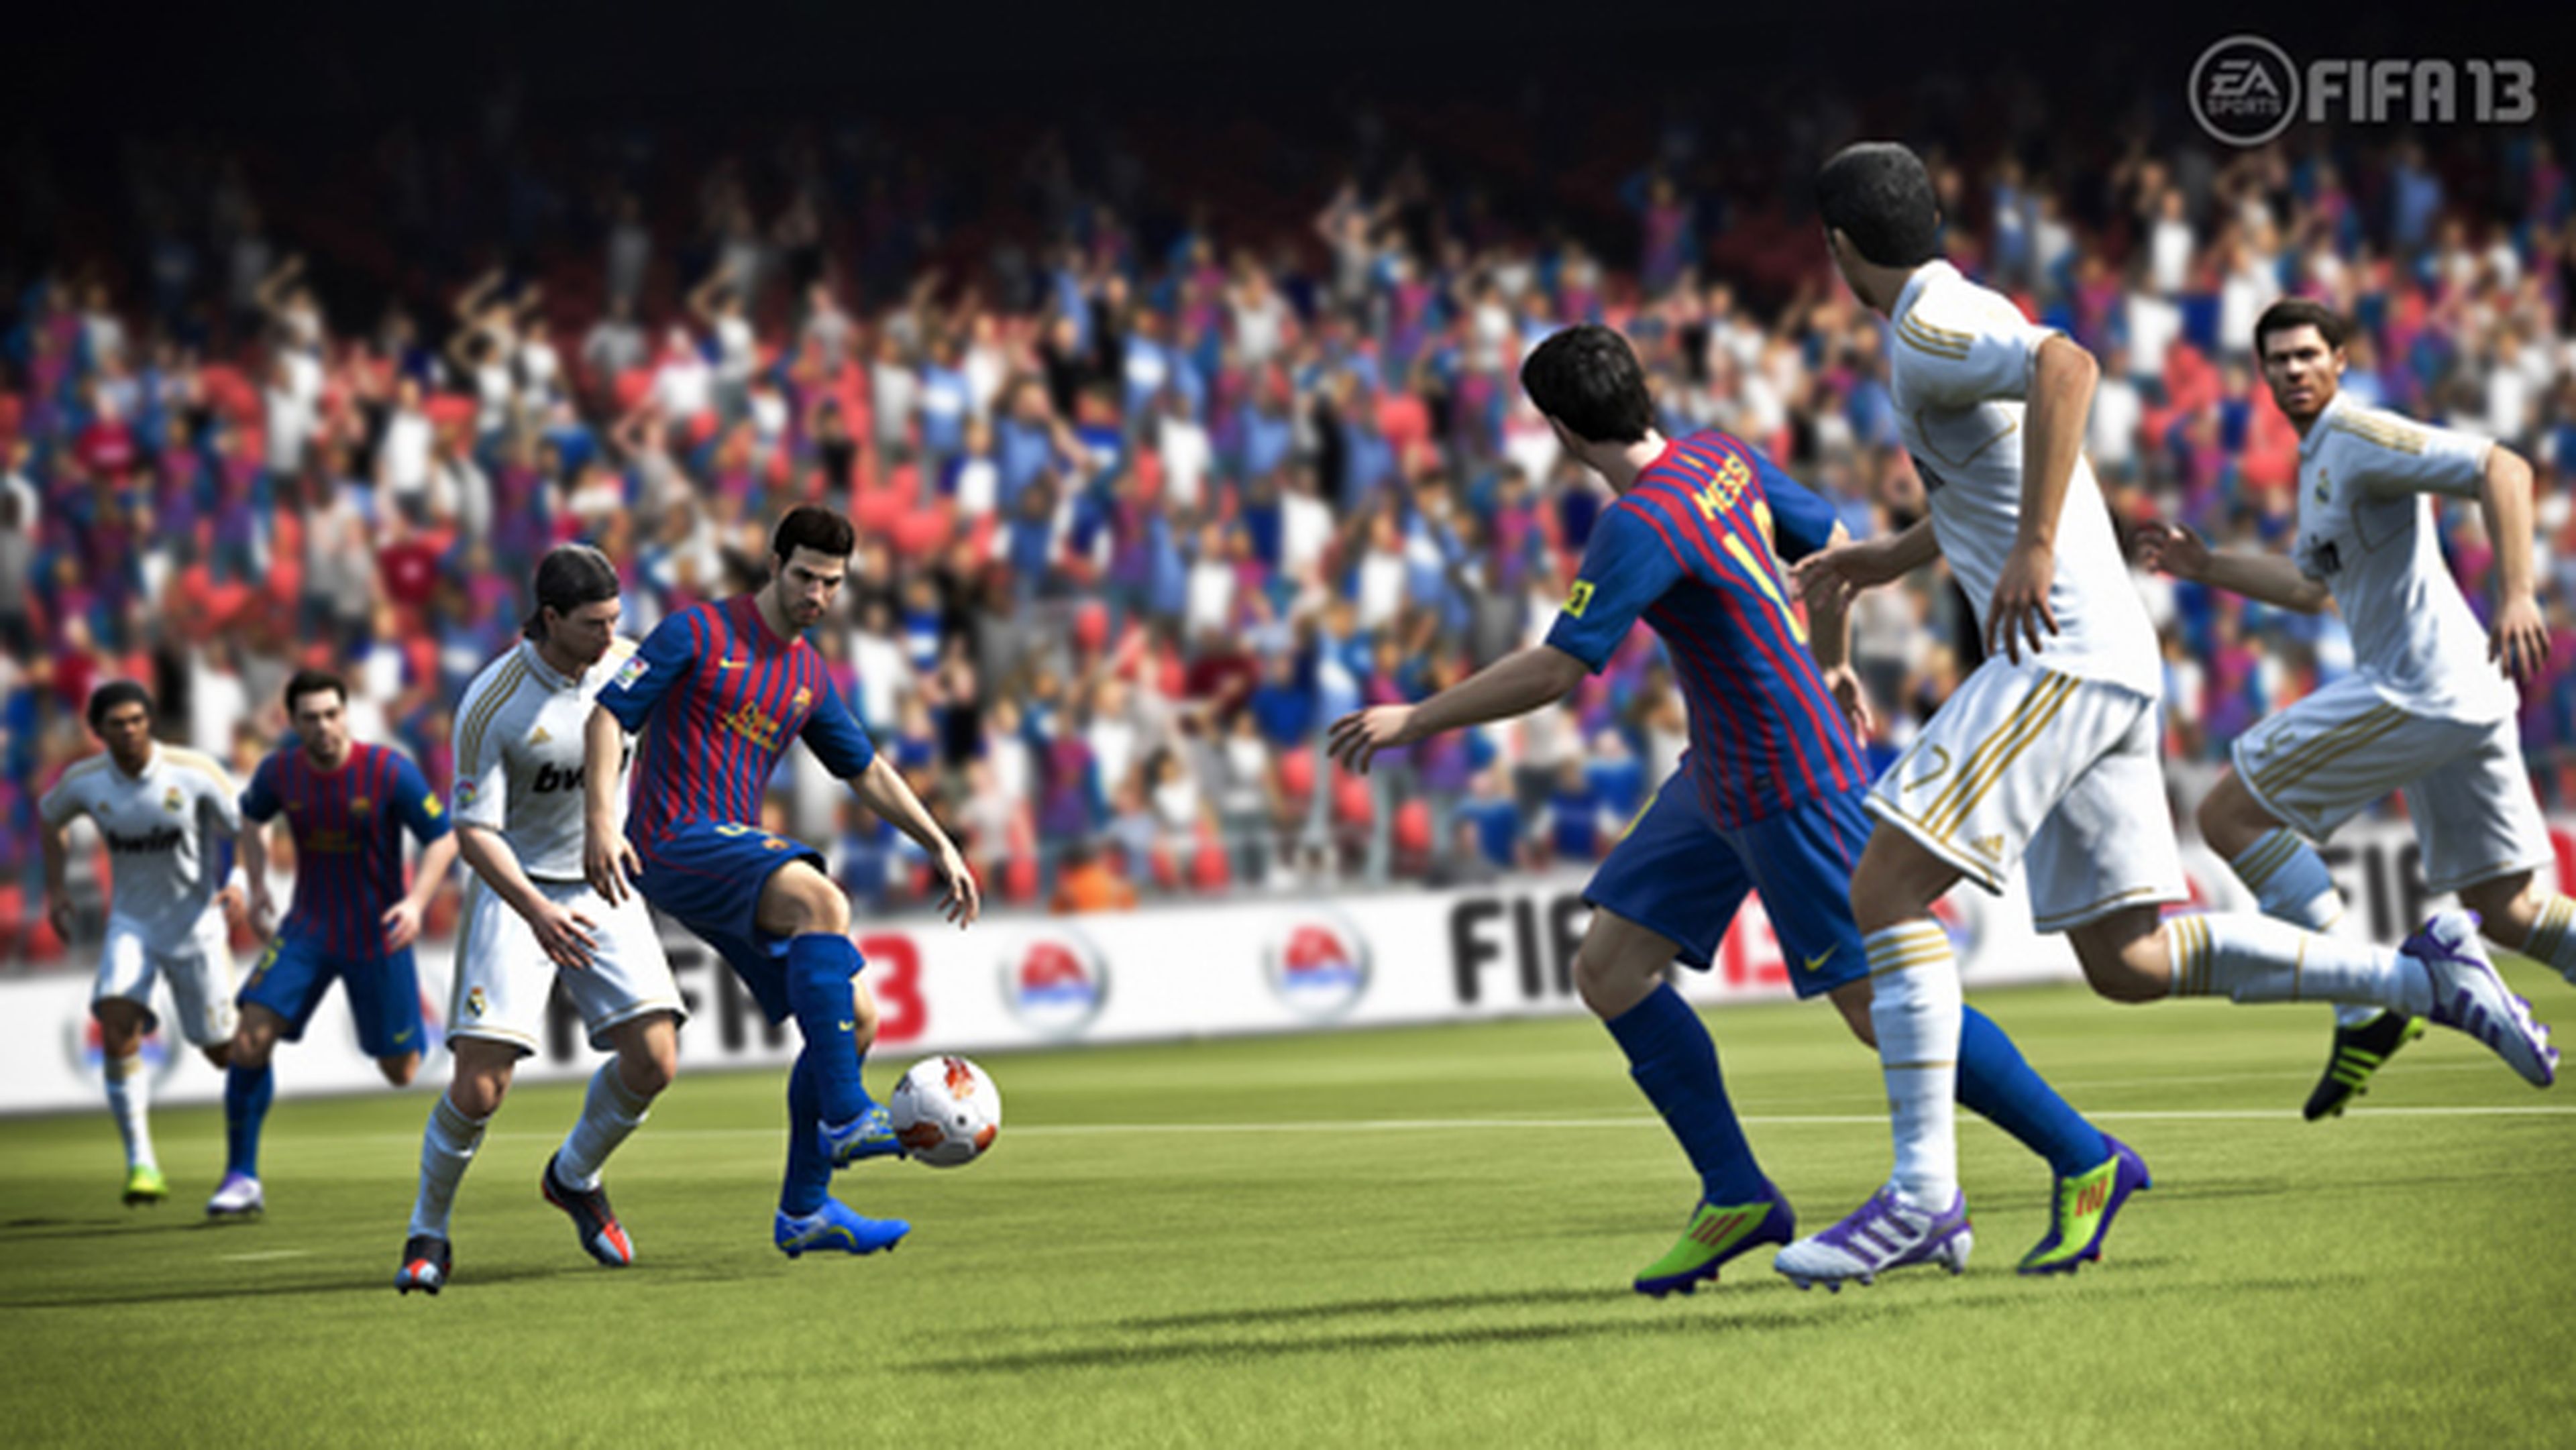 FIFA 13 tendrá importantes mejoras en Wii U